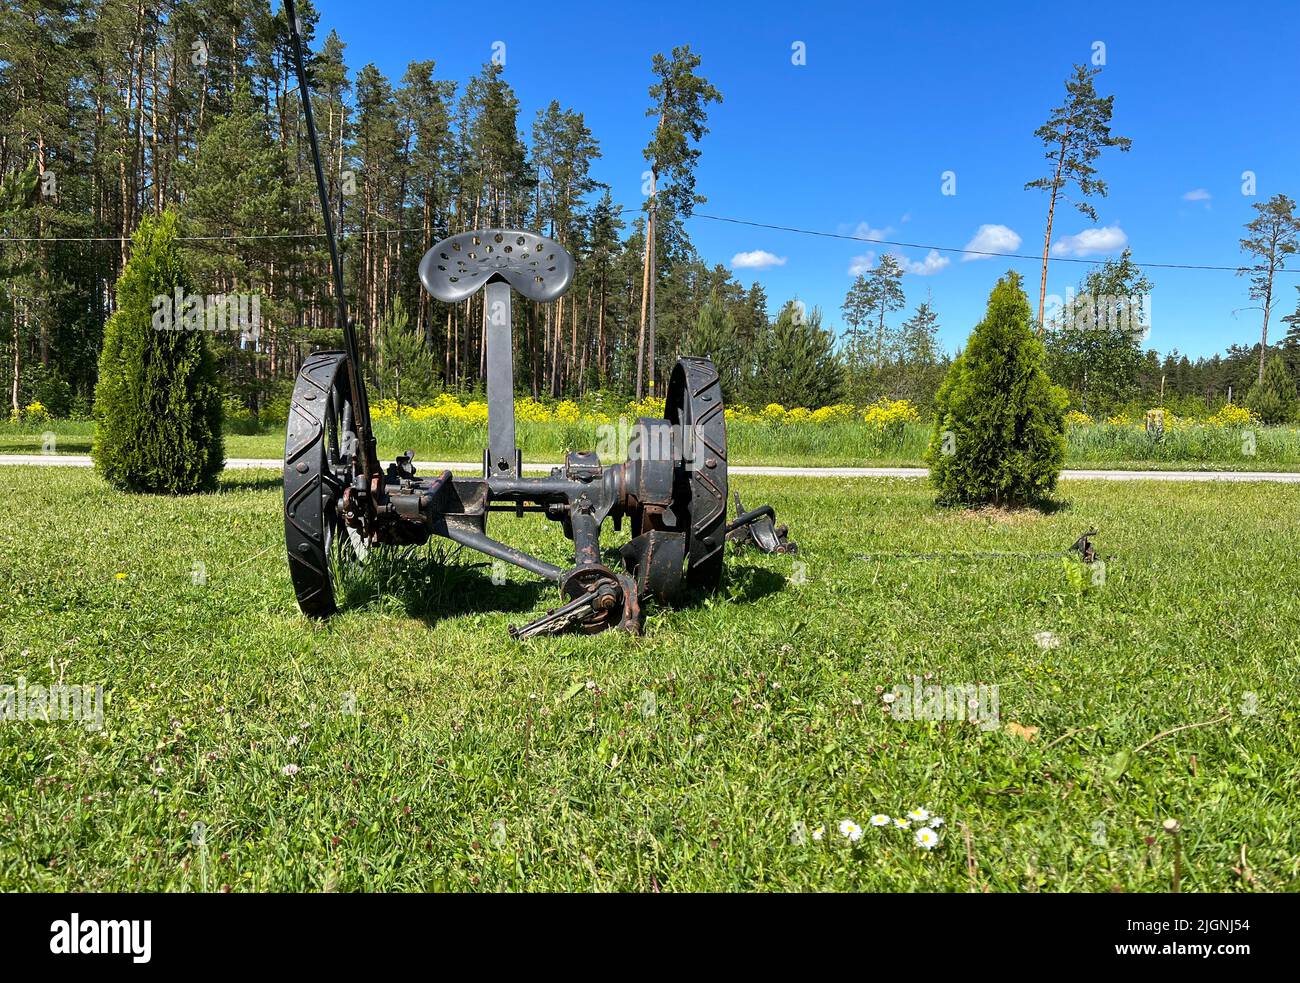 La máquina agrícola obsoleta en una hierba. Estonia Foto de stock